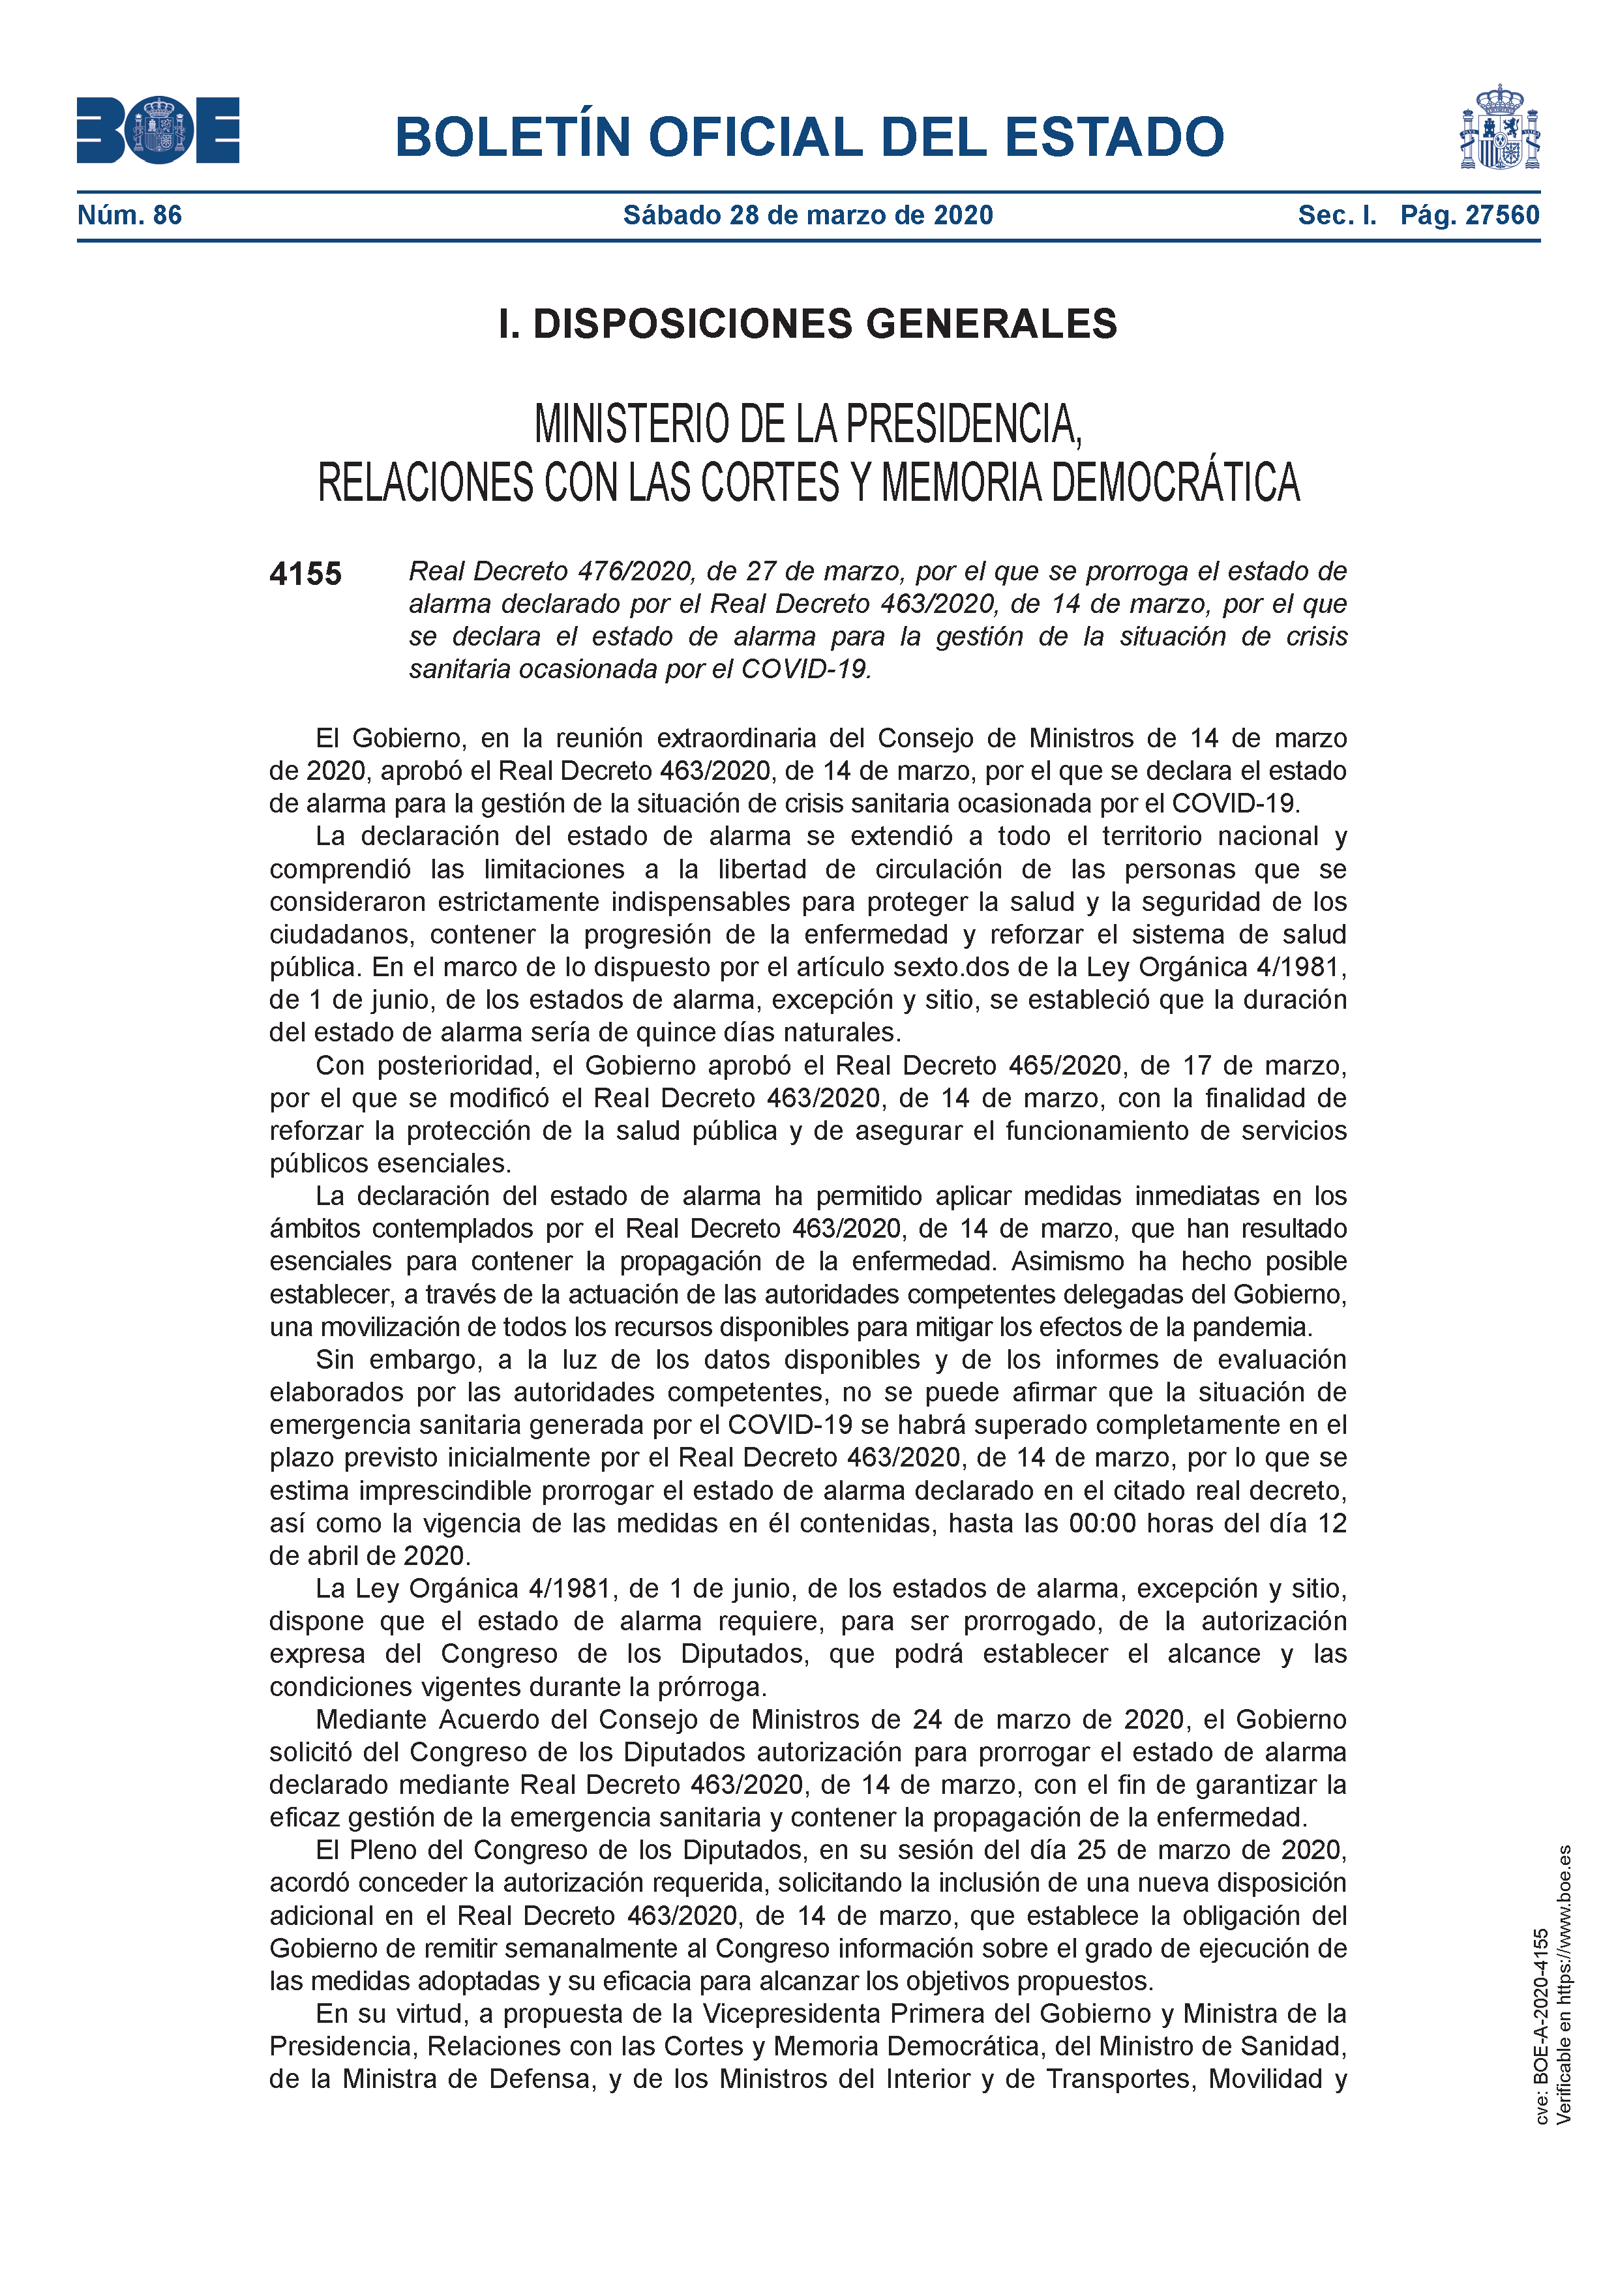 Impresionismo regional Propuesta Ayuntamiento de Buitrago del Lozoya - Real Decreto de sábado 28 de marzo,  por el que se prorroga el estado de alarma hasta las 00:00 horas del día 12  de abril de 2020